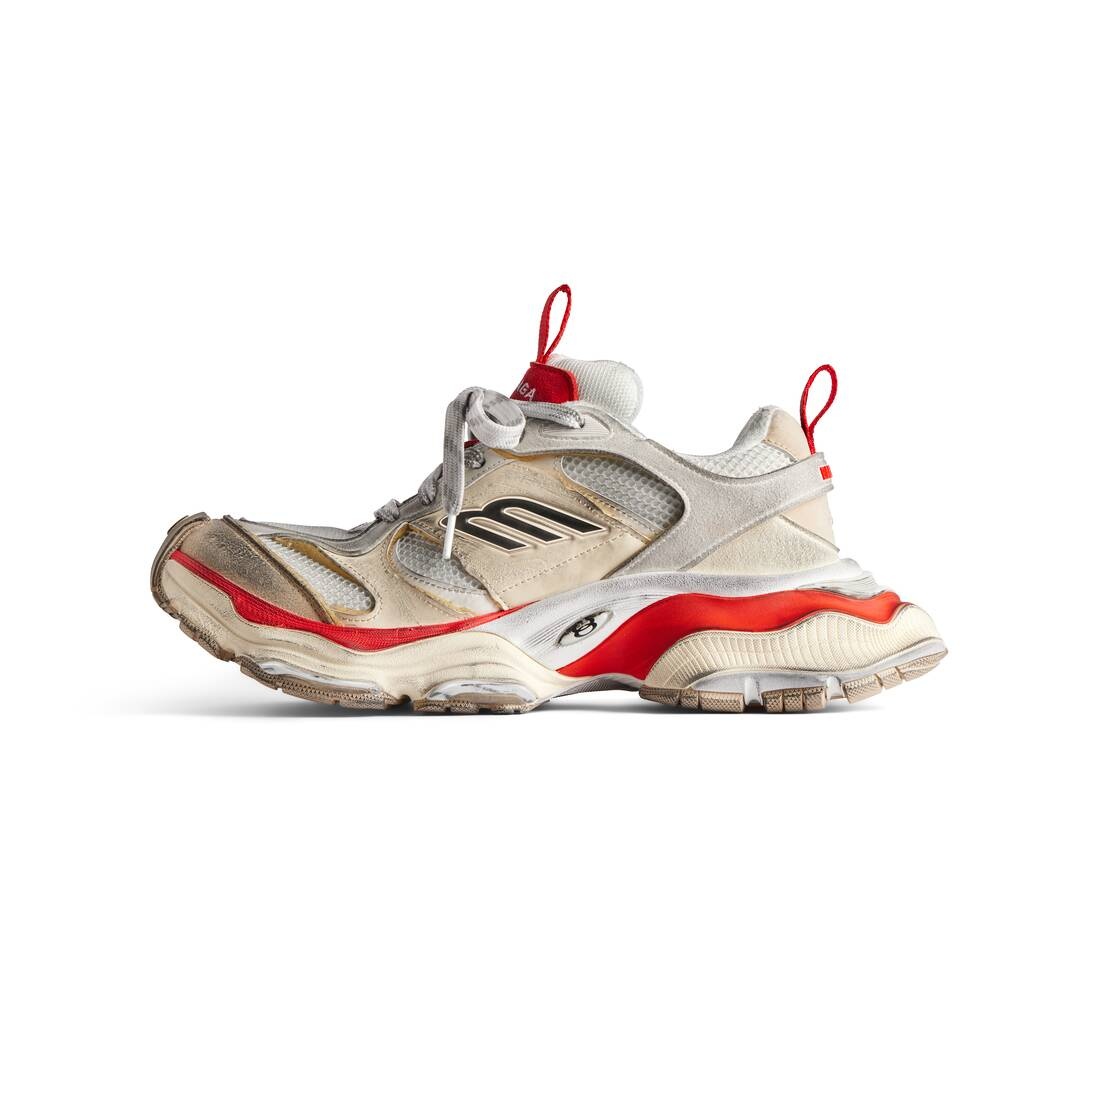 Men's Cargo Sneaker  in Beige/grey/red - 4